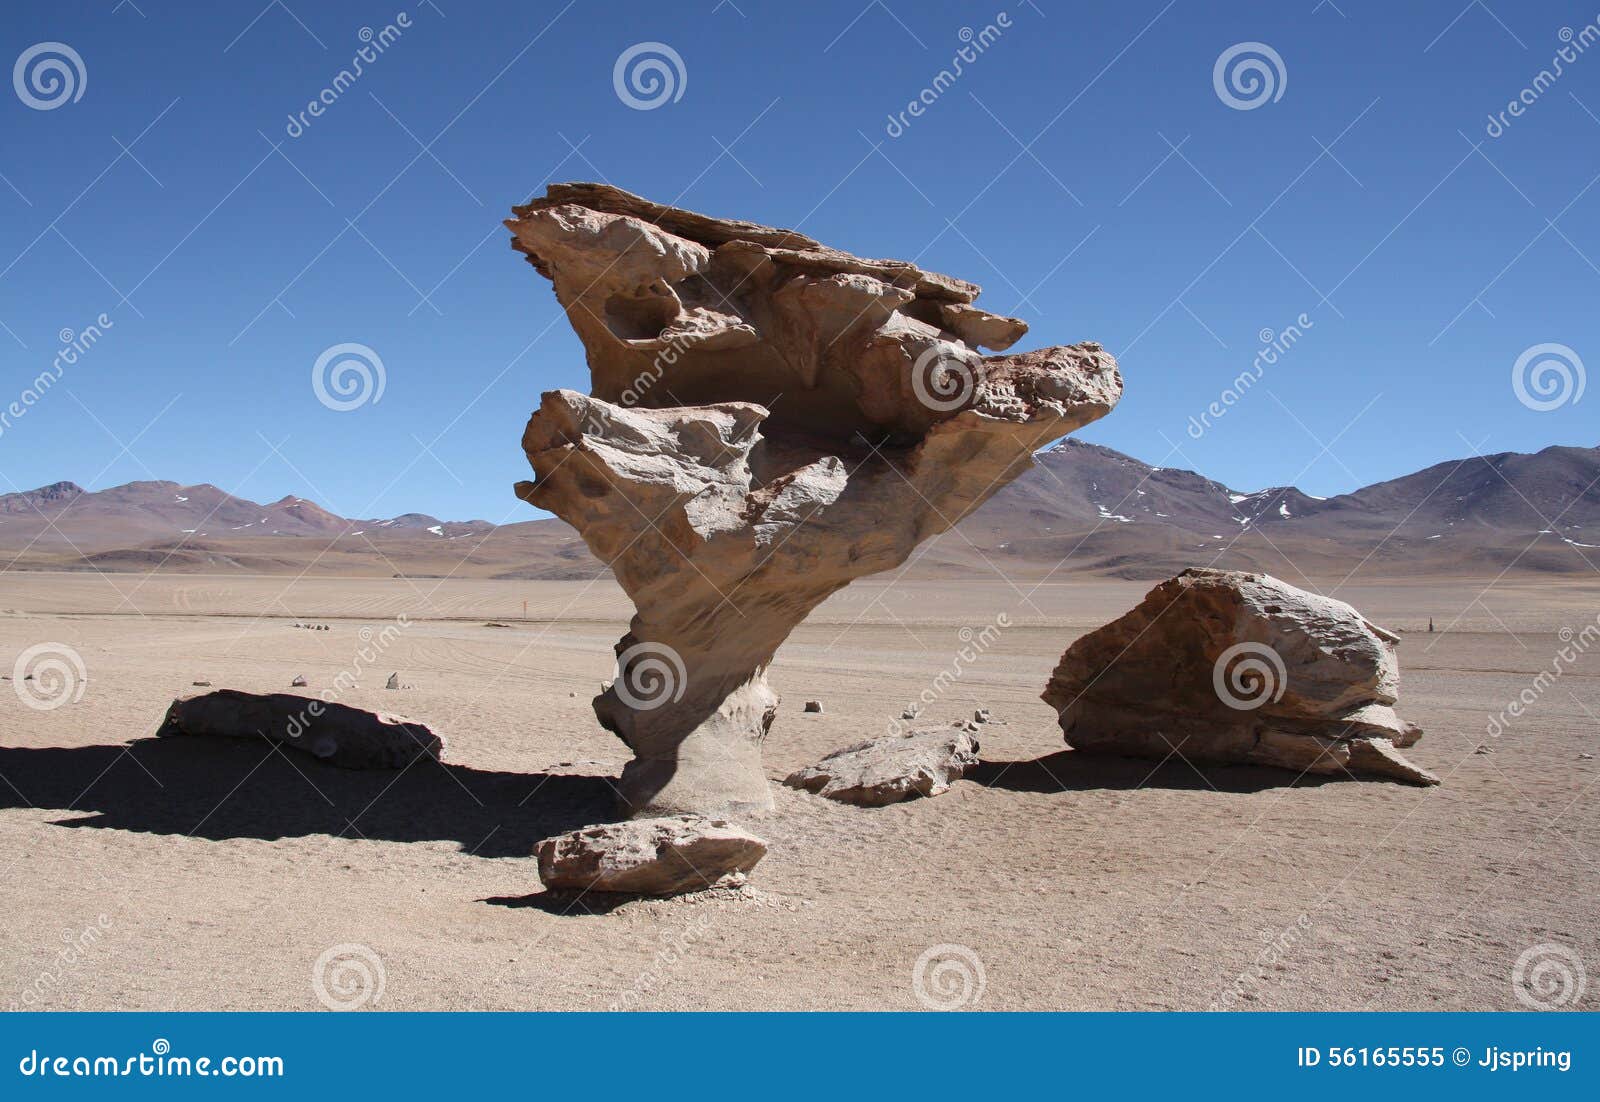 famous arbol de piedra, stone valley, atacama desert, bolivia